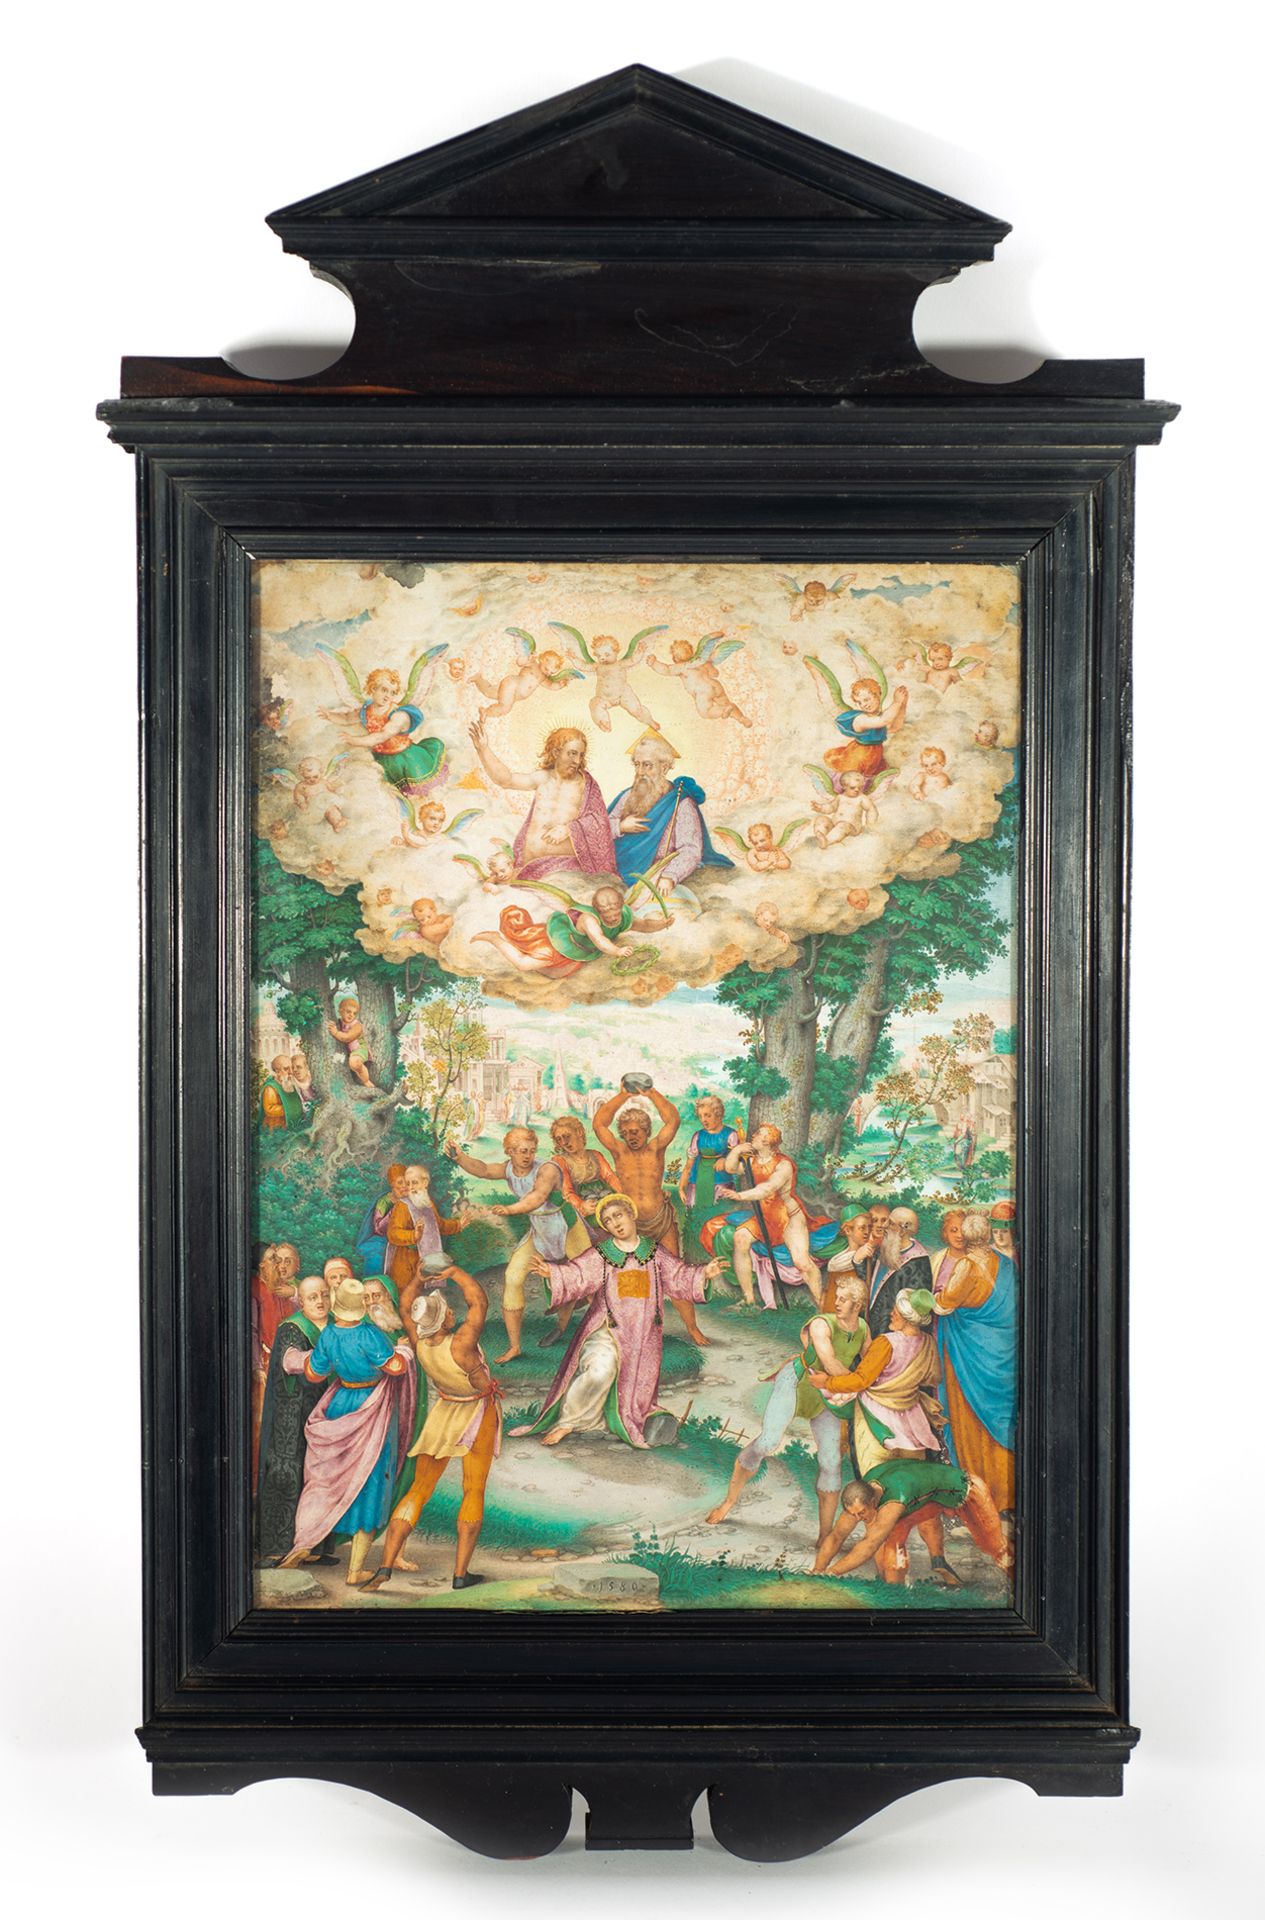 GIOVANNI BATTISTA CASTELLO, “THE GENOVESE” (Genoa, Italy, 1549 - ca. 1639), The Martyrdom of Saint S